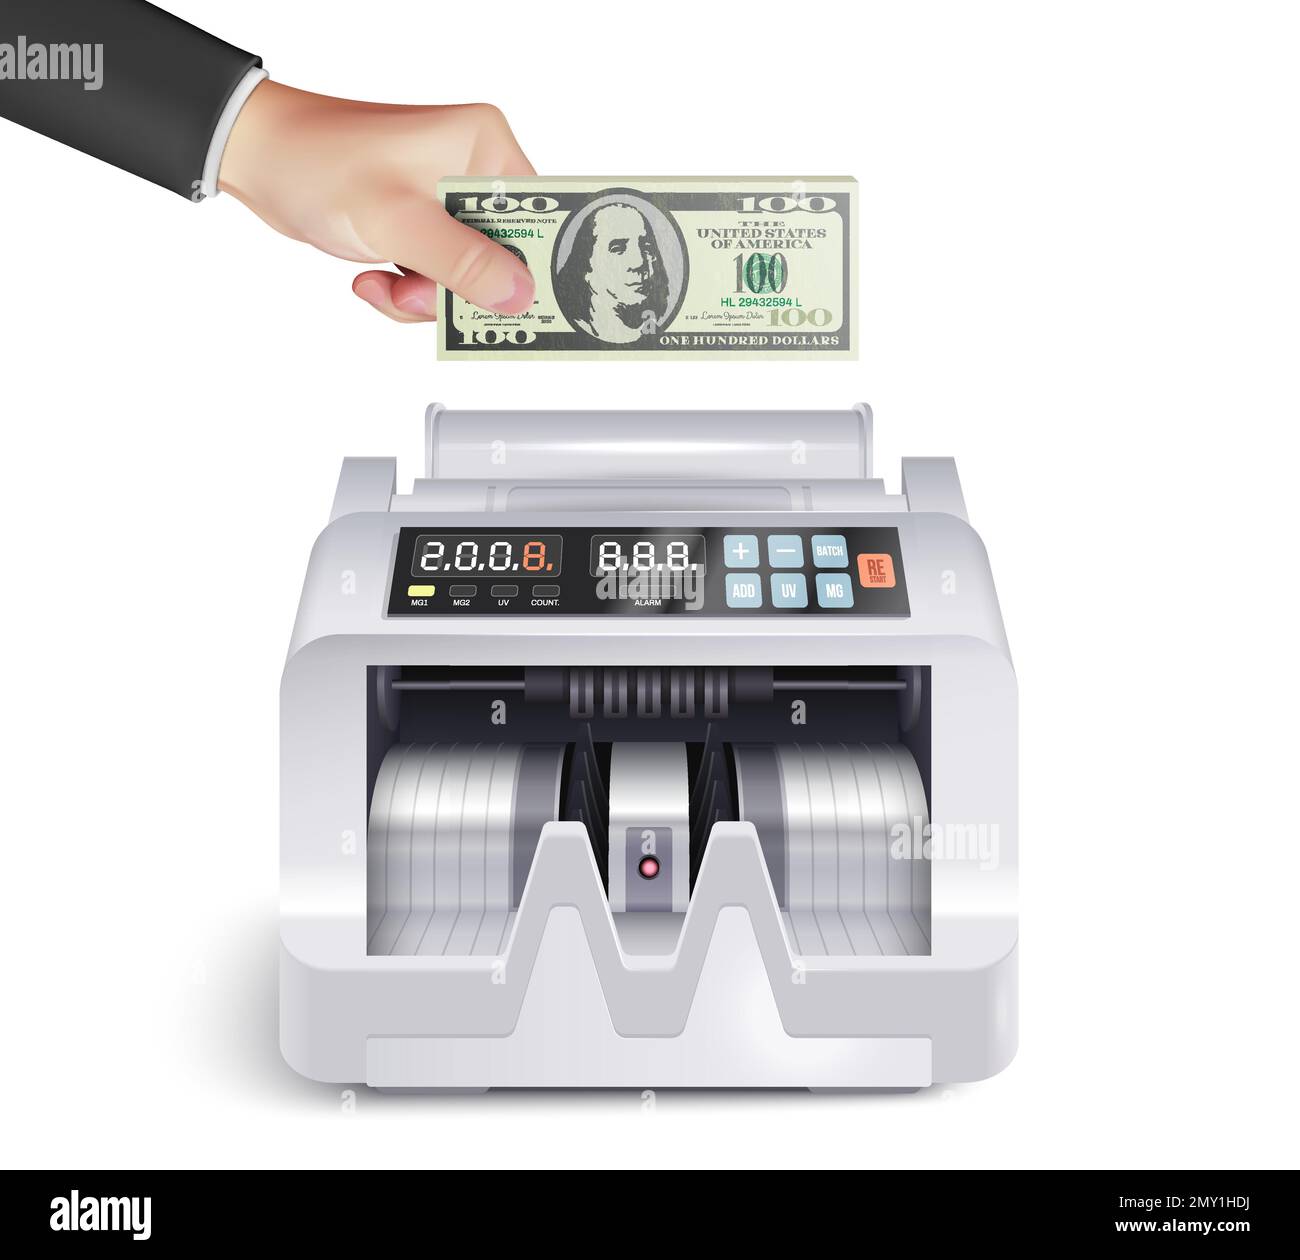 Machine à compter les billets Banque d'images vectorielles - Alamy